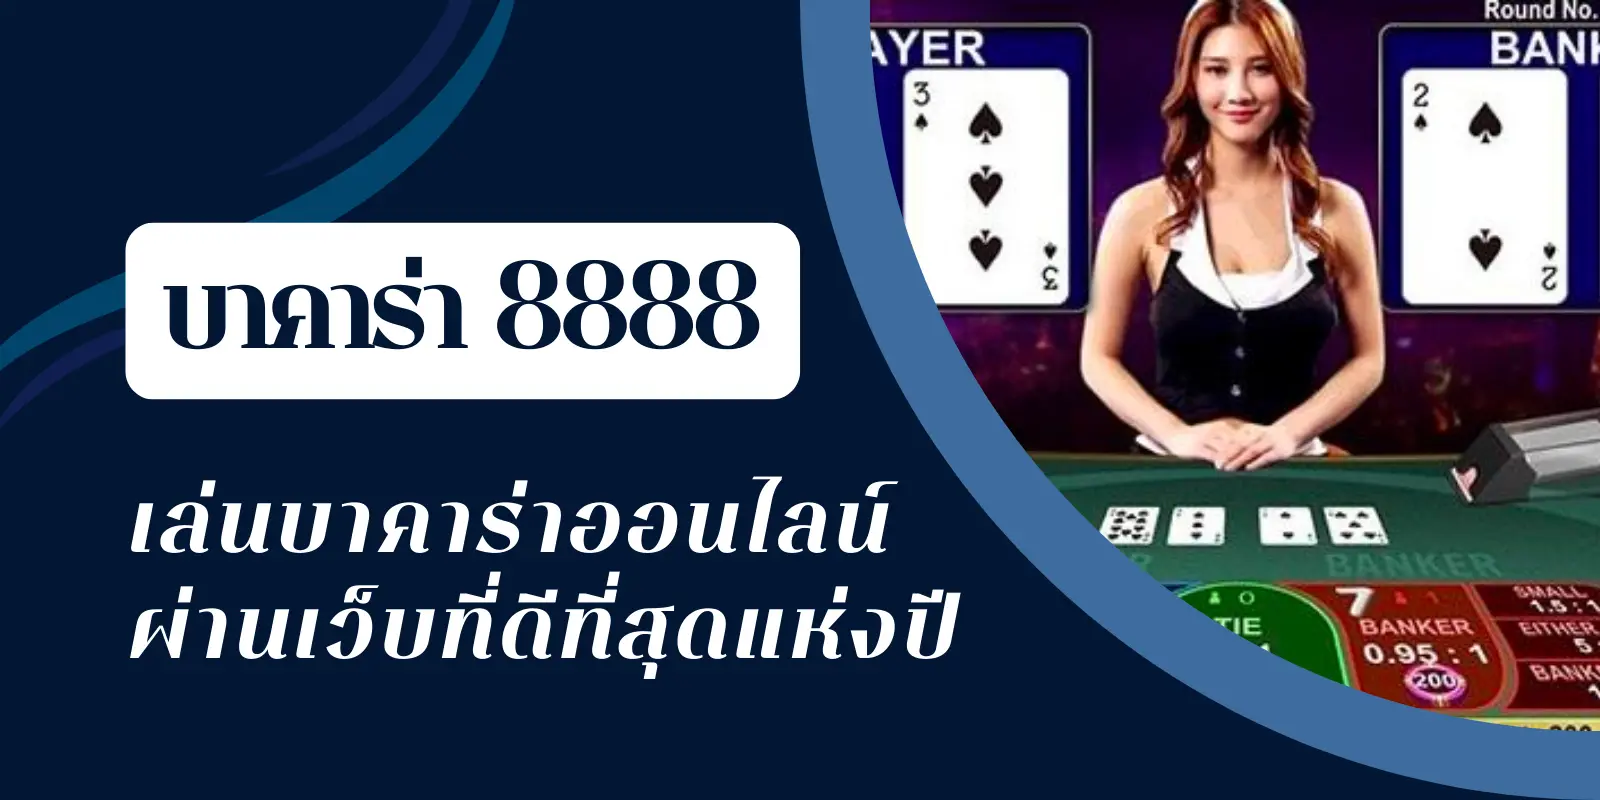 แอพมือถือ บาคาร่า8888 เล่นได้เงินจริงง่ายที่สุดในประเทศไทย.webp